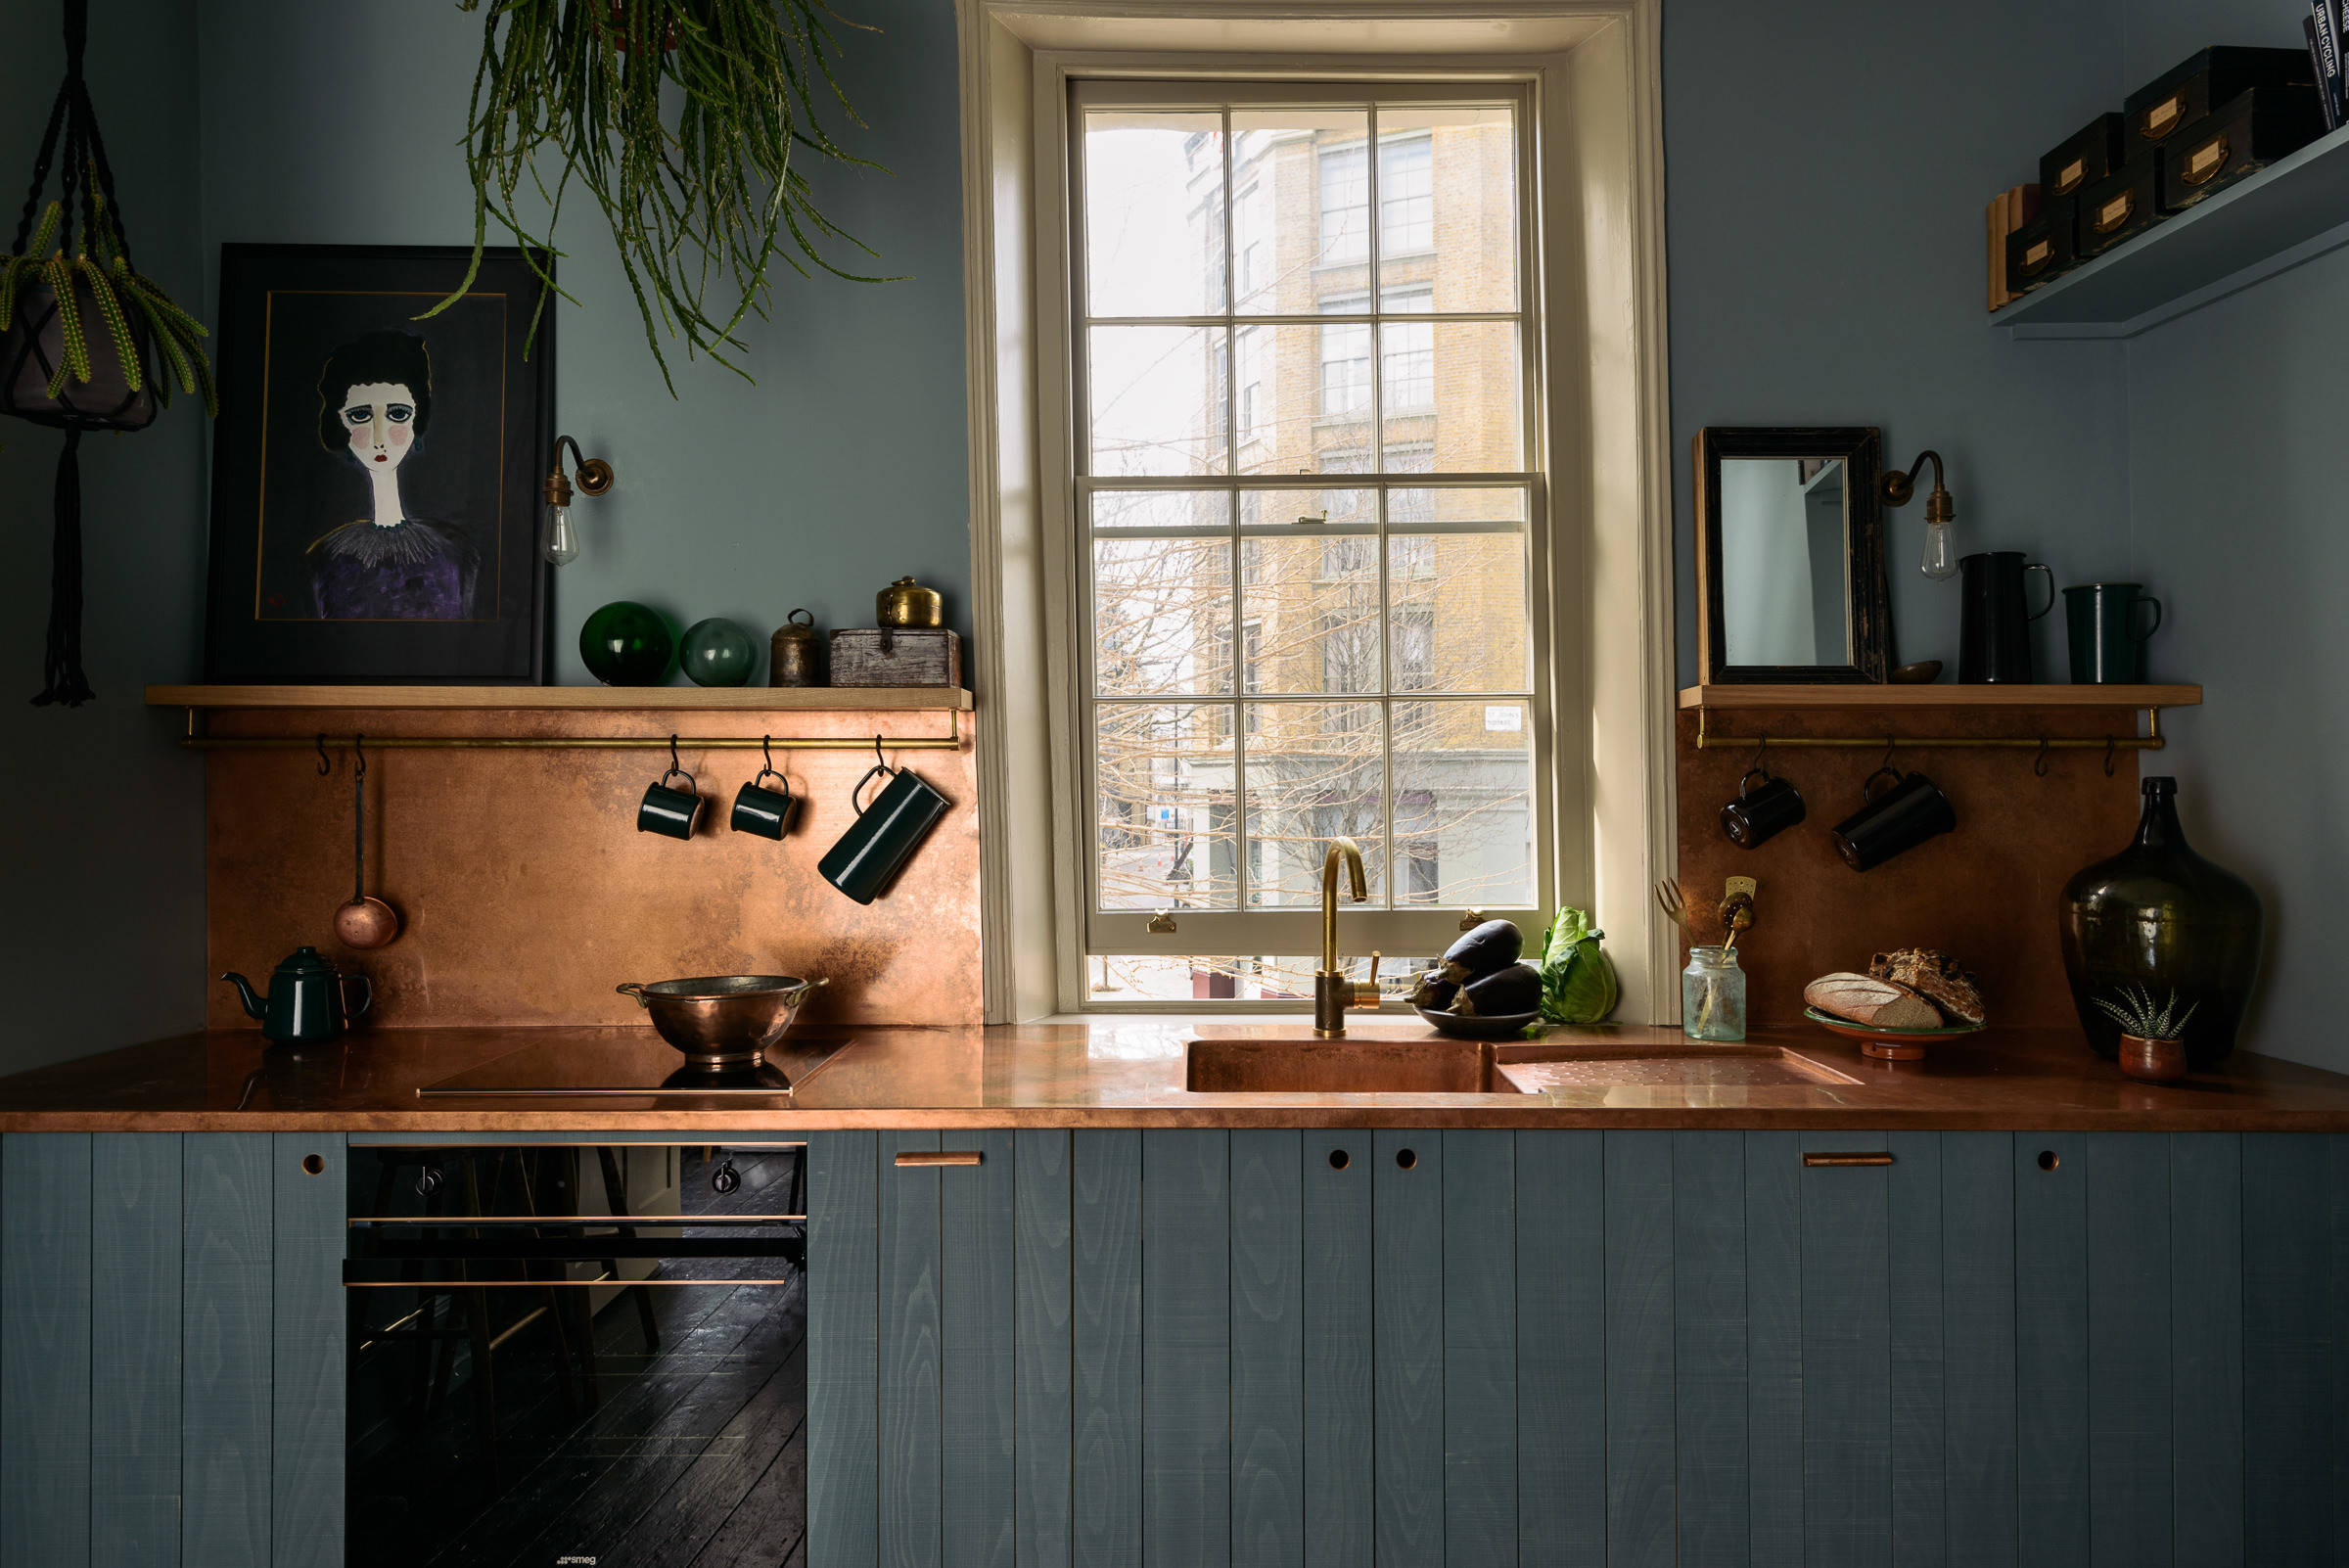 Brass and copper kitchen ideas | Houzz UK